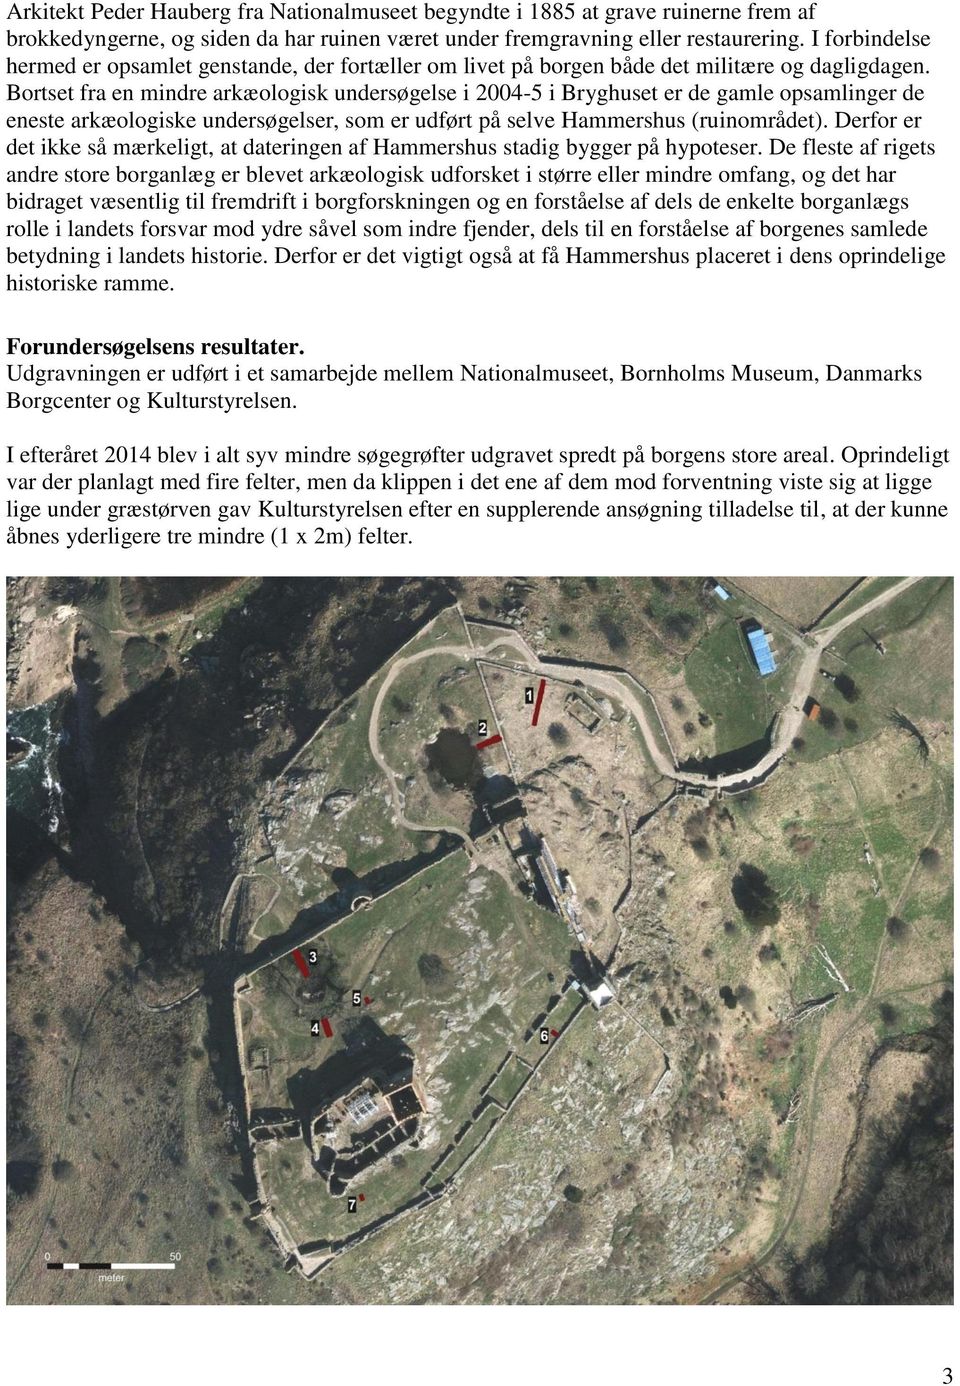 Bortset fra en mindre arkæologisk undersøgelse i 2004-5 i Bryghuset er de gamle opsamlinger de eneste arkæologiske undersøgelser, som er udført på selve Hammershus (ruinområdet).